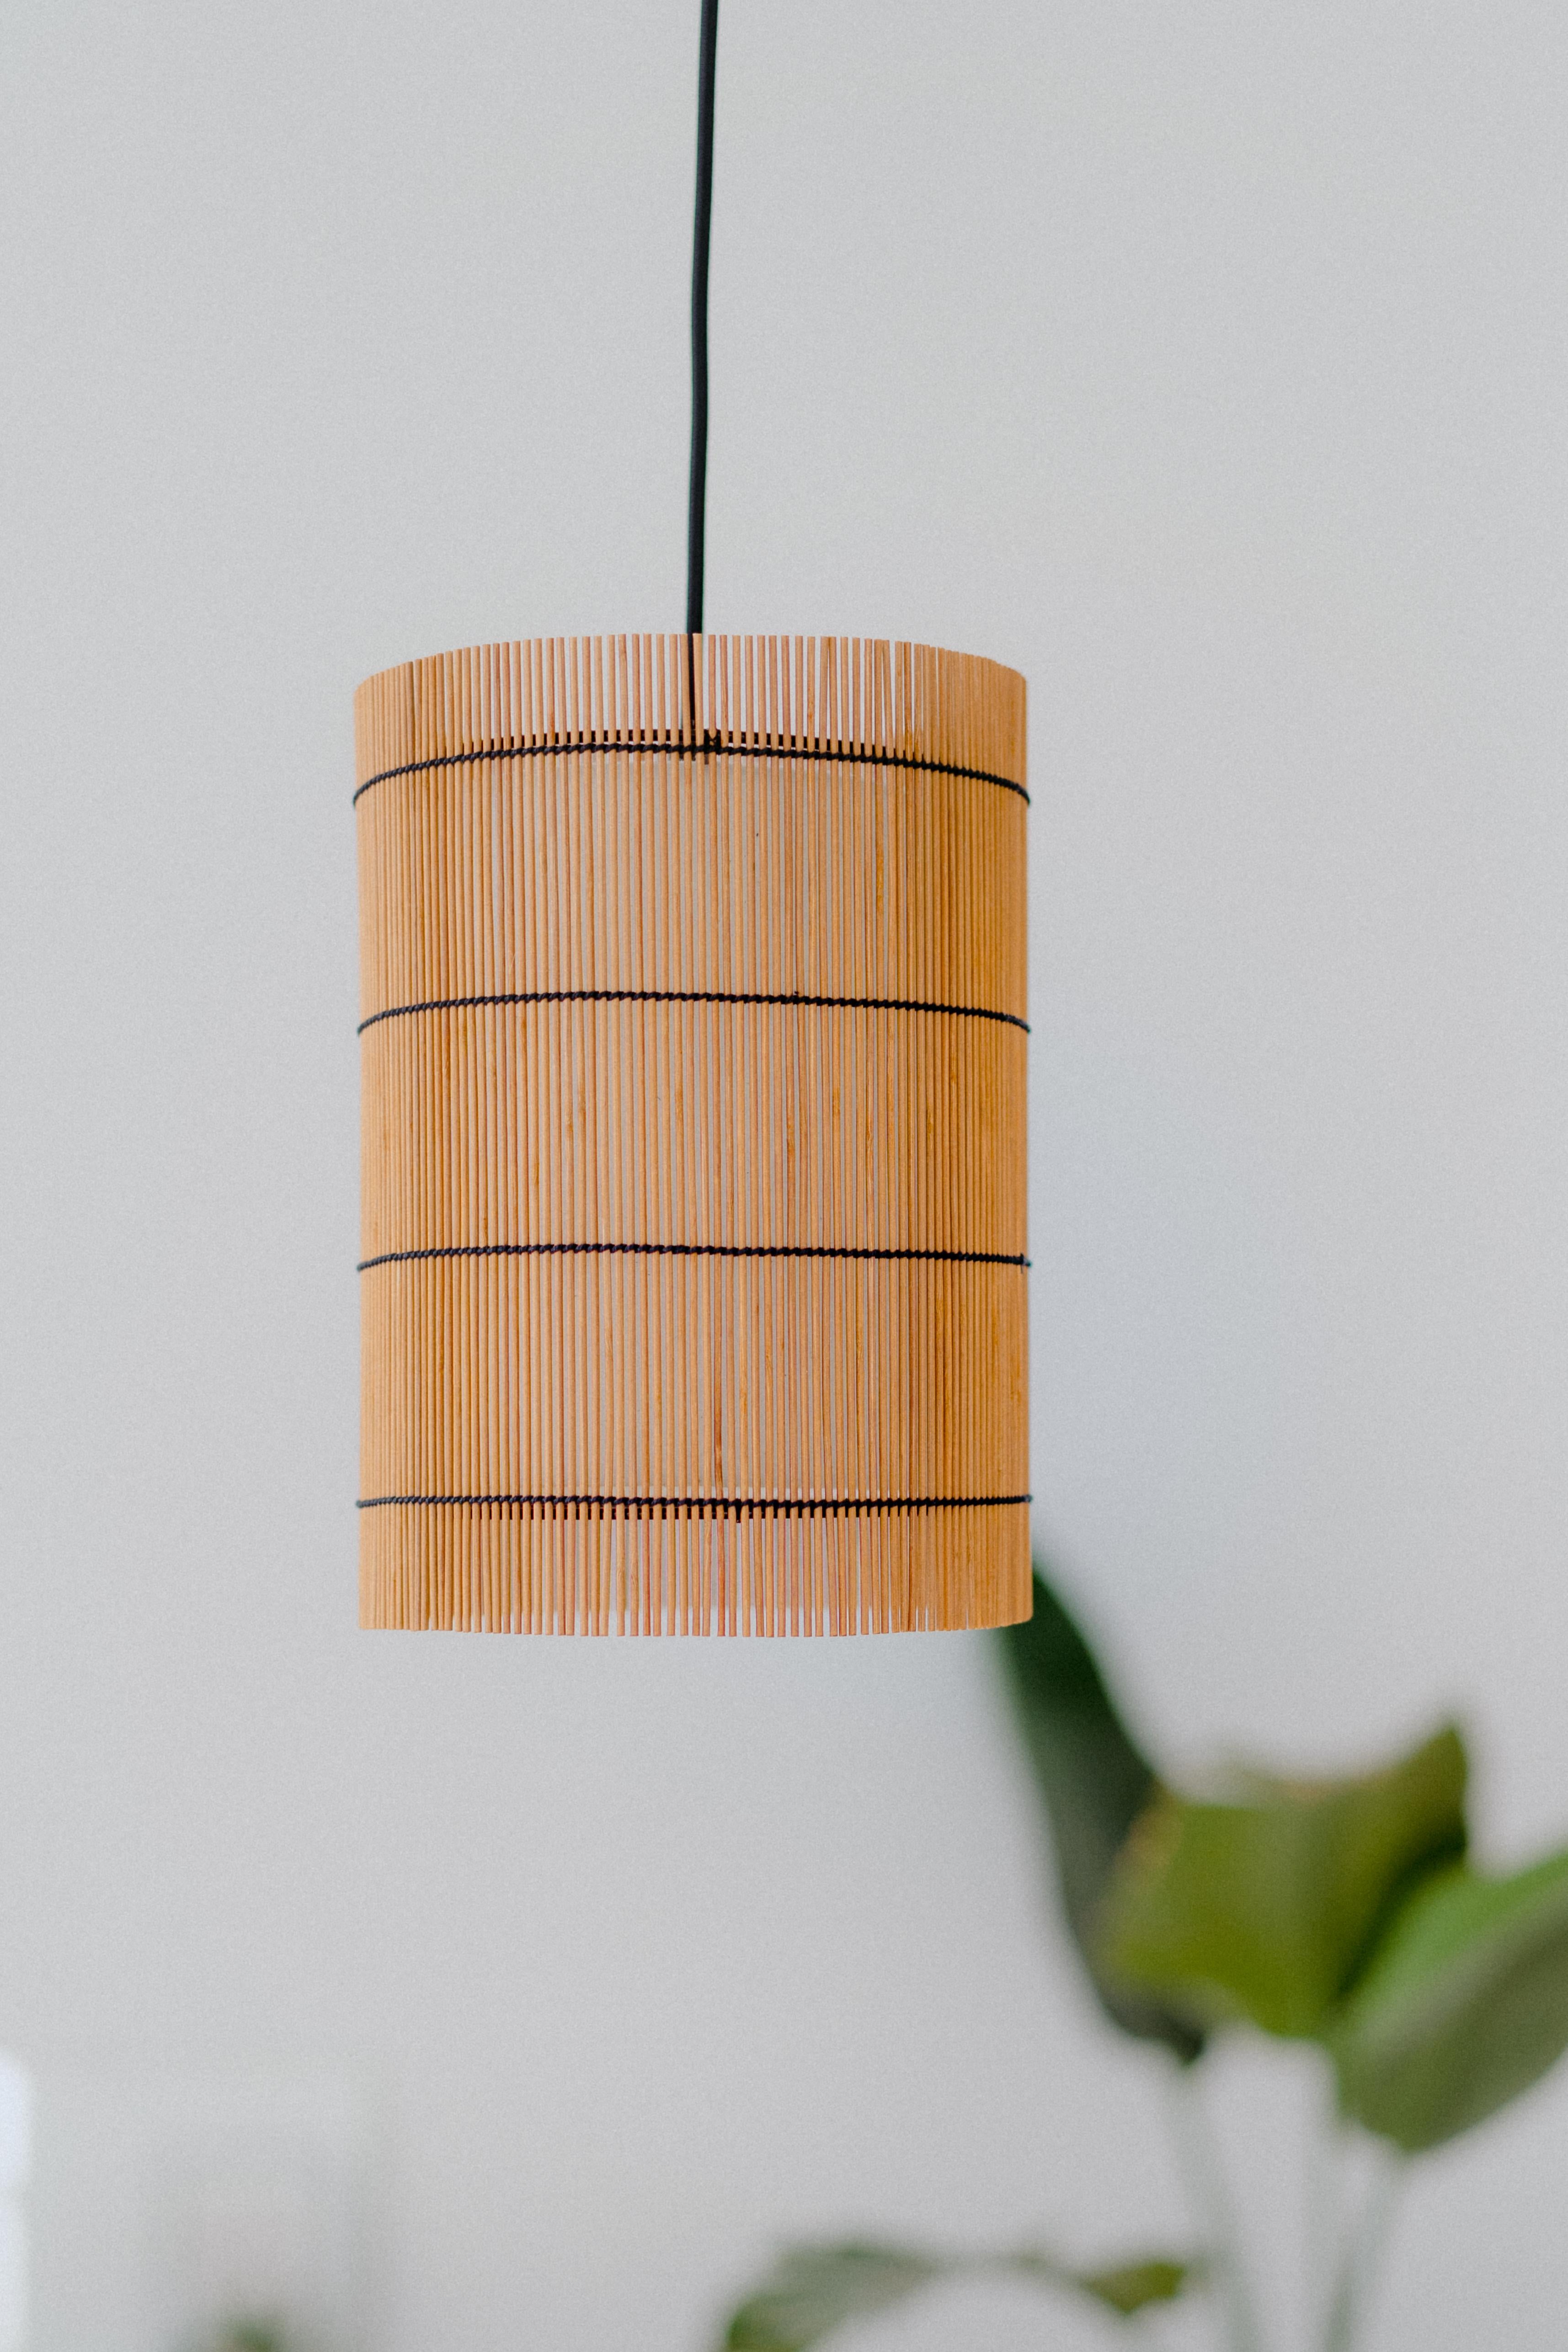 Die FOC-Lampen werden von Mediterranean Objects in Barcelona, Spanien, entworfen und hergestellt. 

Sie bestehen aus einem Außenschirm aus kirschfarbenem, gefärbtem Bambus, der wie die Struktur der Lampe mit einem schwarzen Faden durchzogen ist.